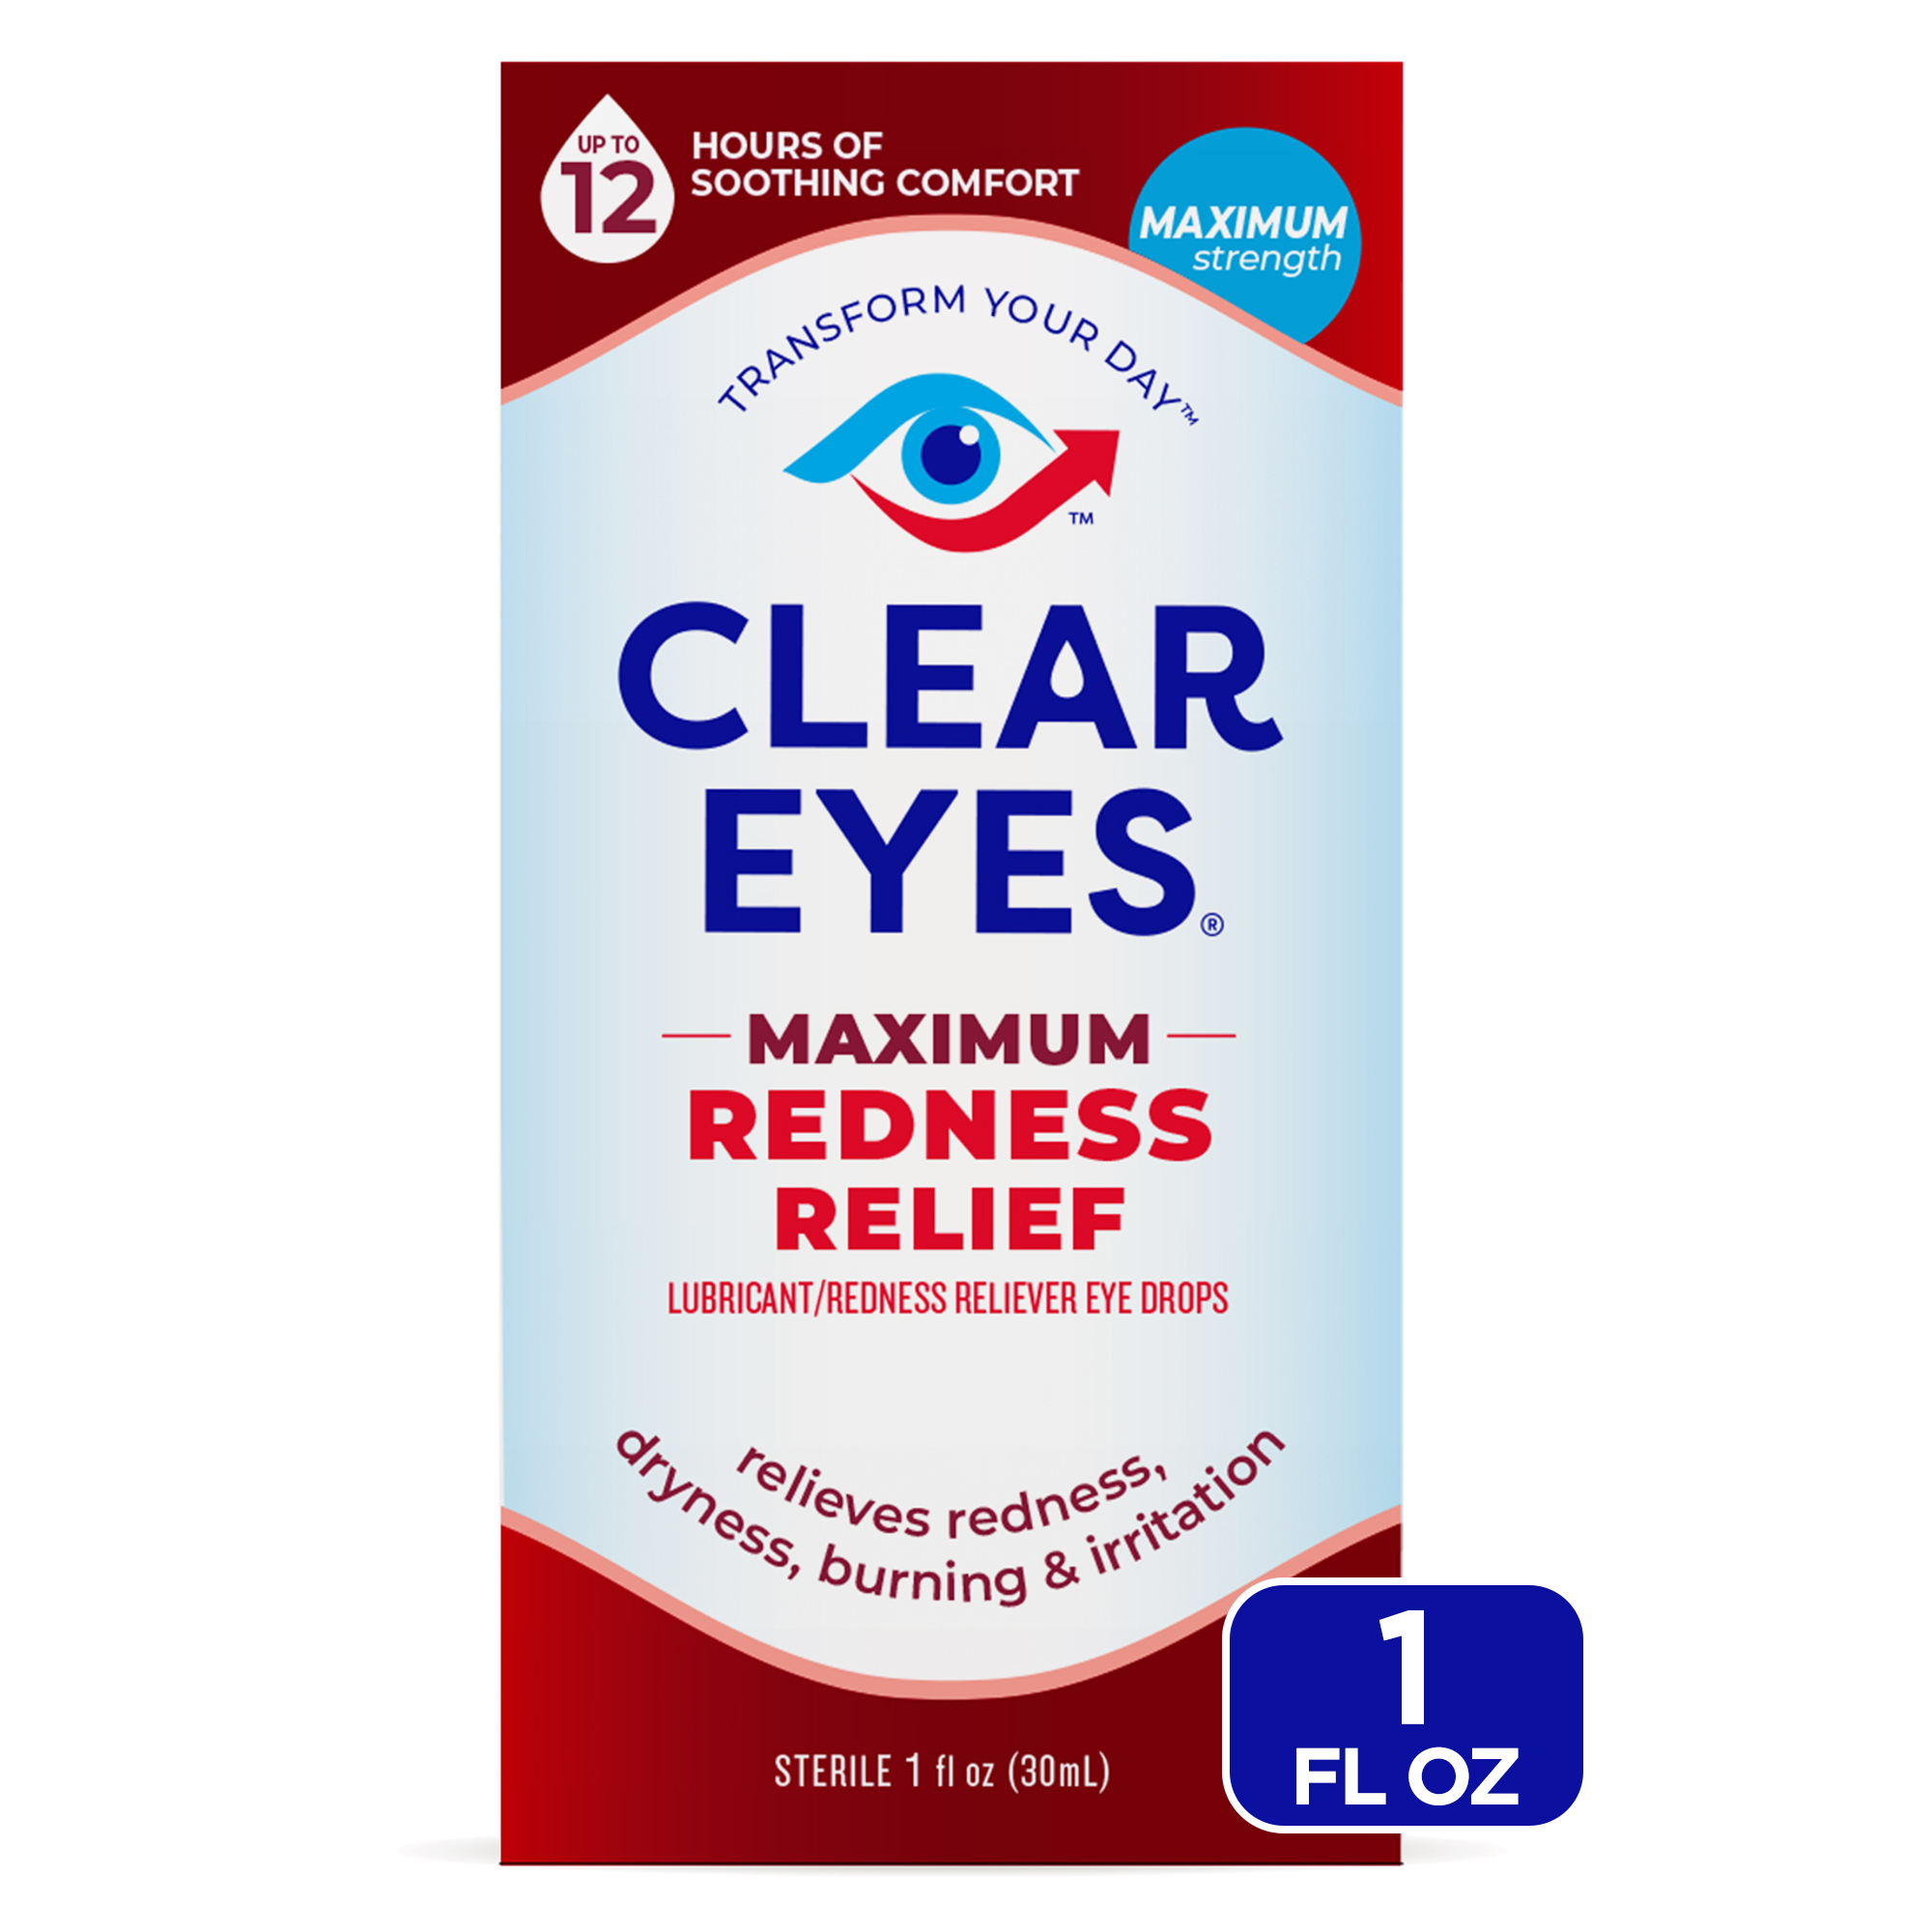 Clear Eyes Maximum Redness Eye Relief Lubricant Eye Drops, 1 fl oz - image 1 of 13